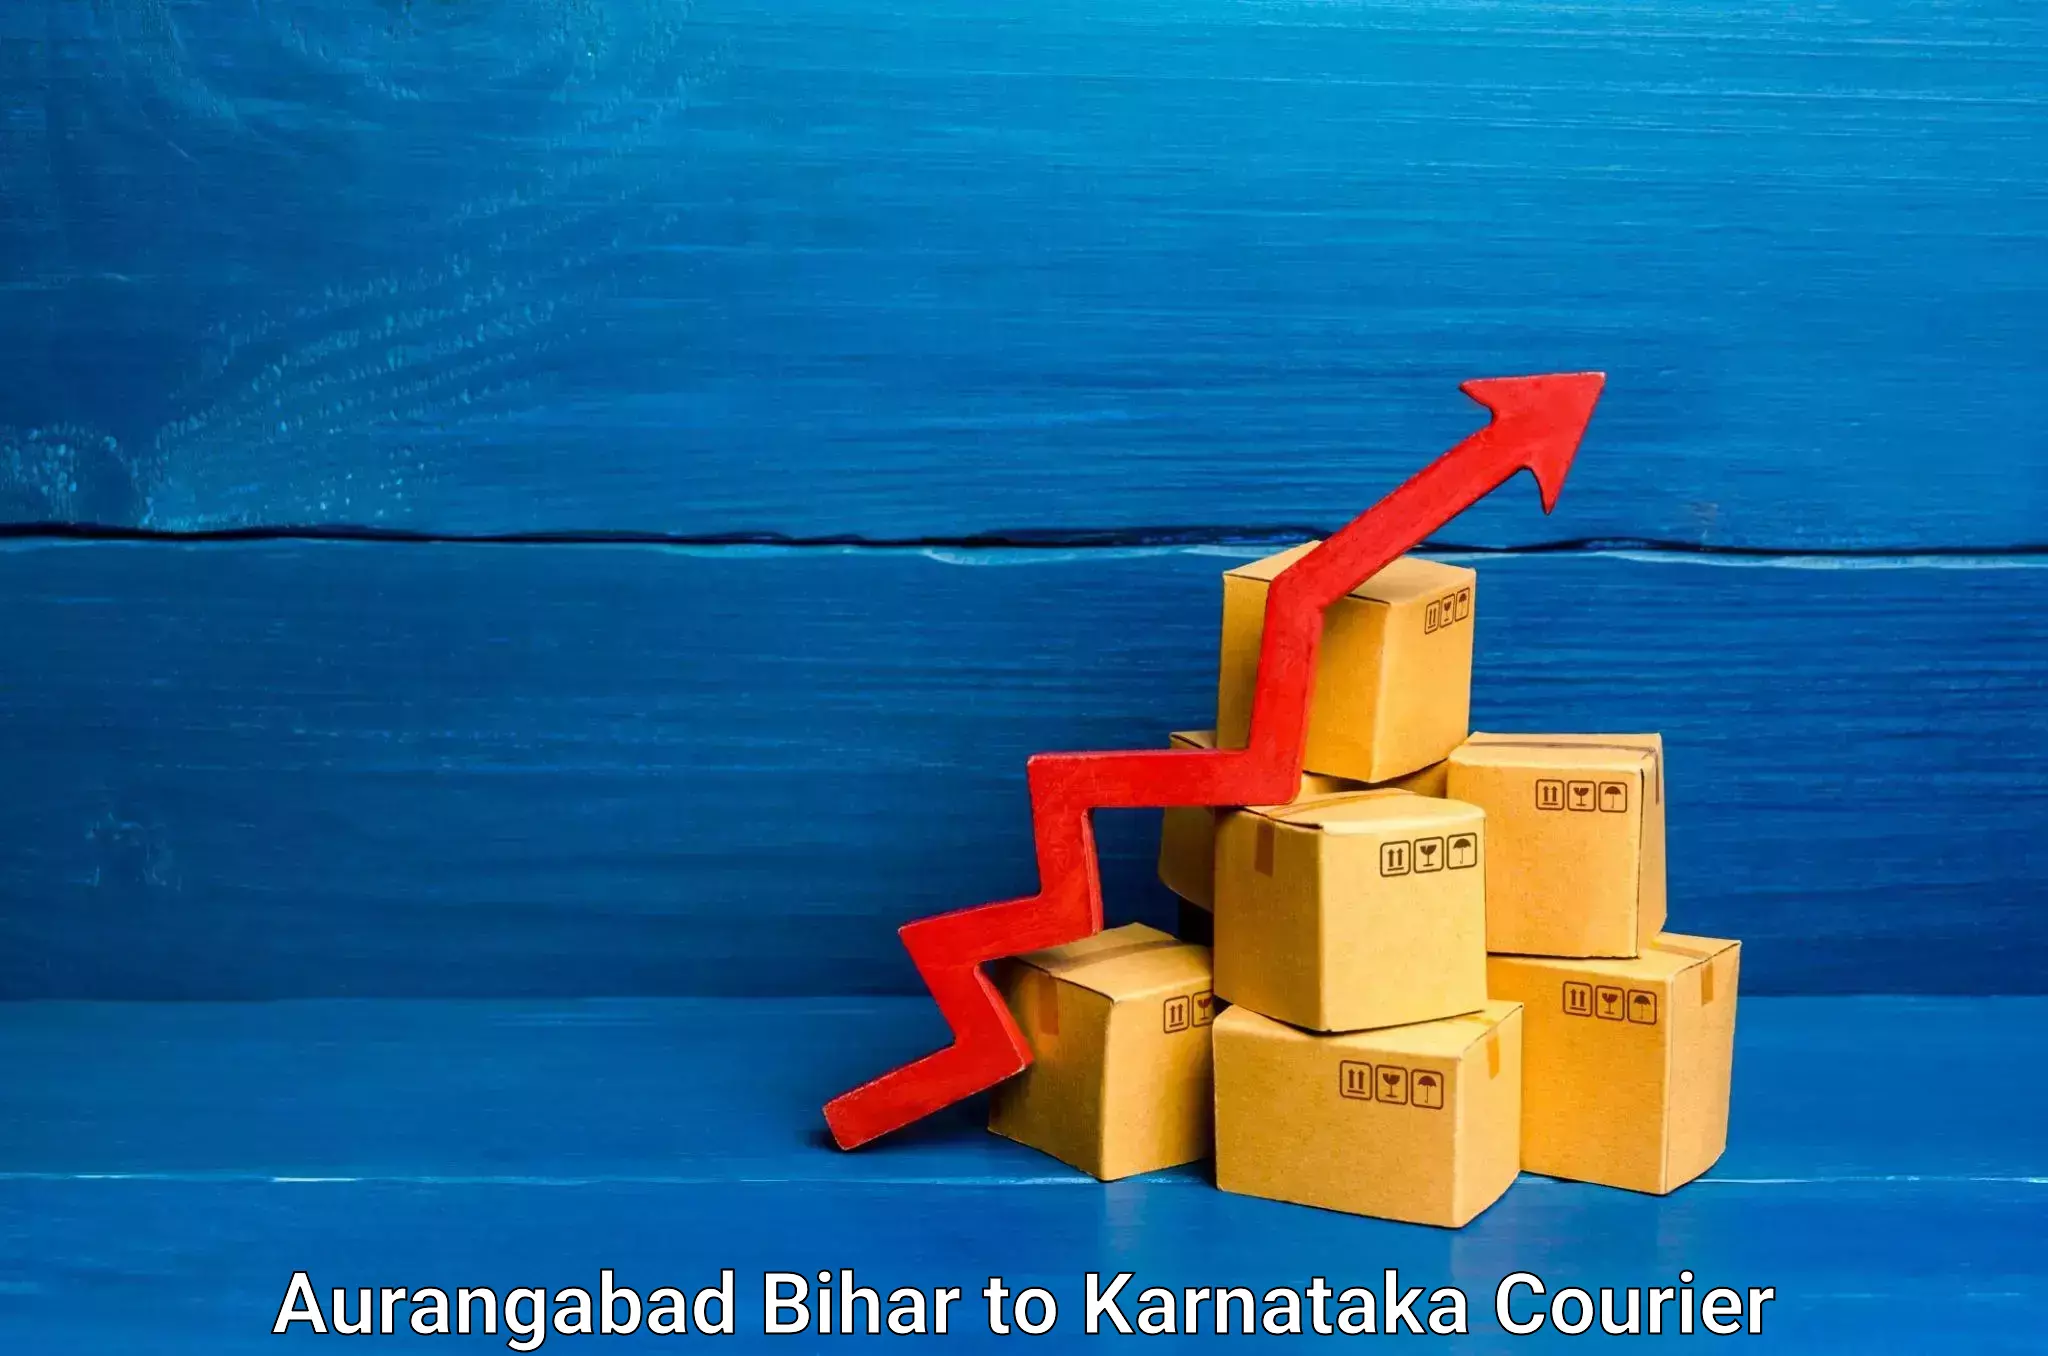 Expert goods movers Aurangabad Bihar to Thirthahalli